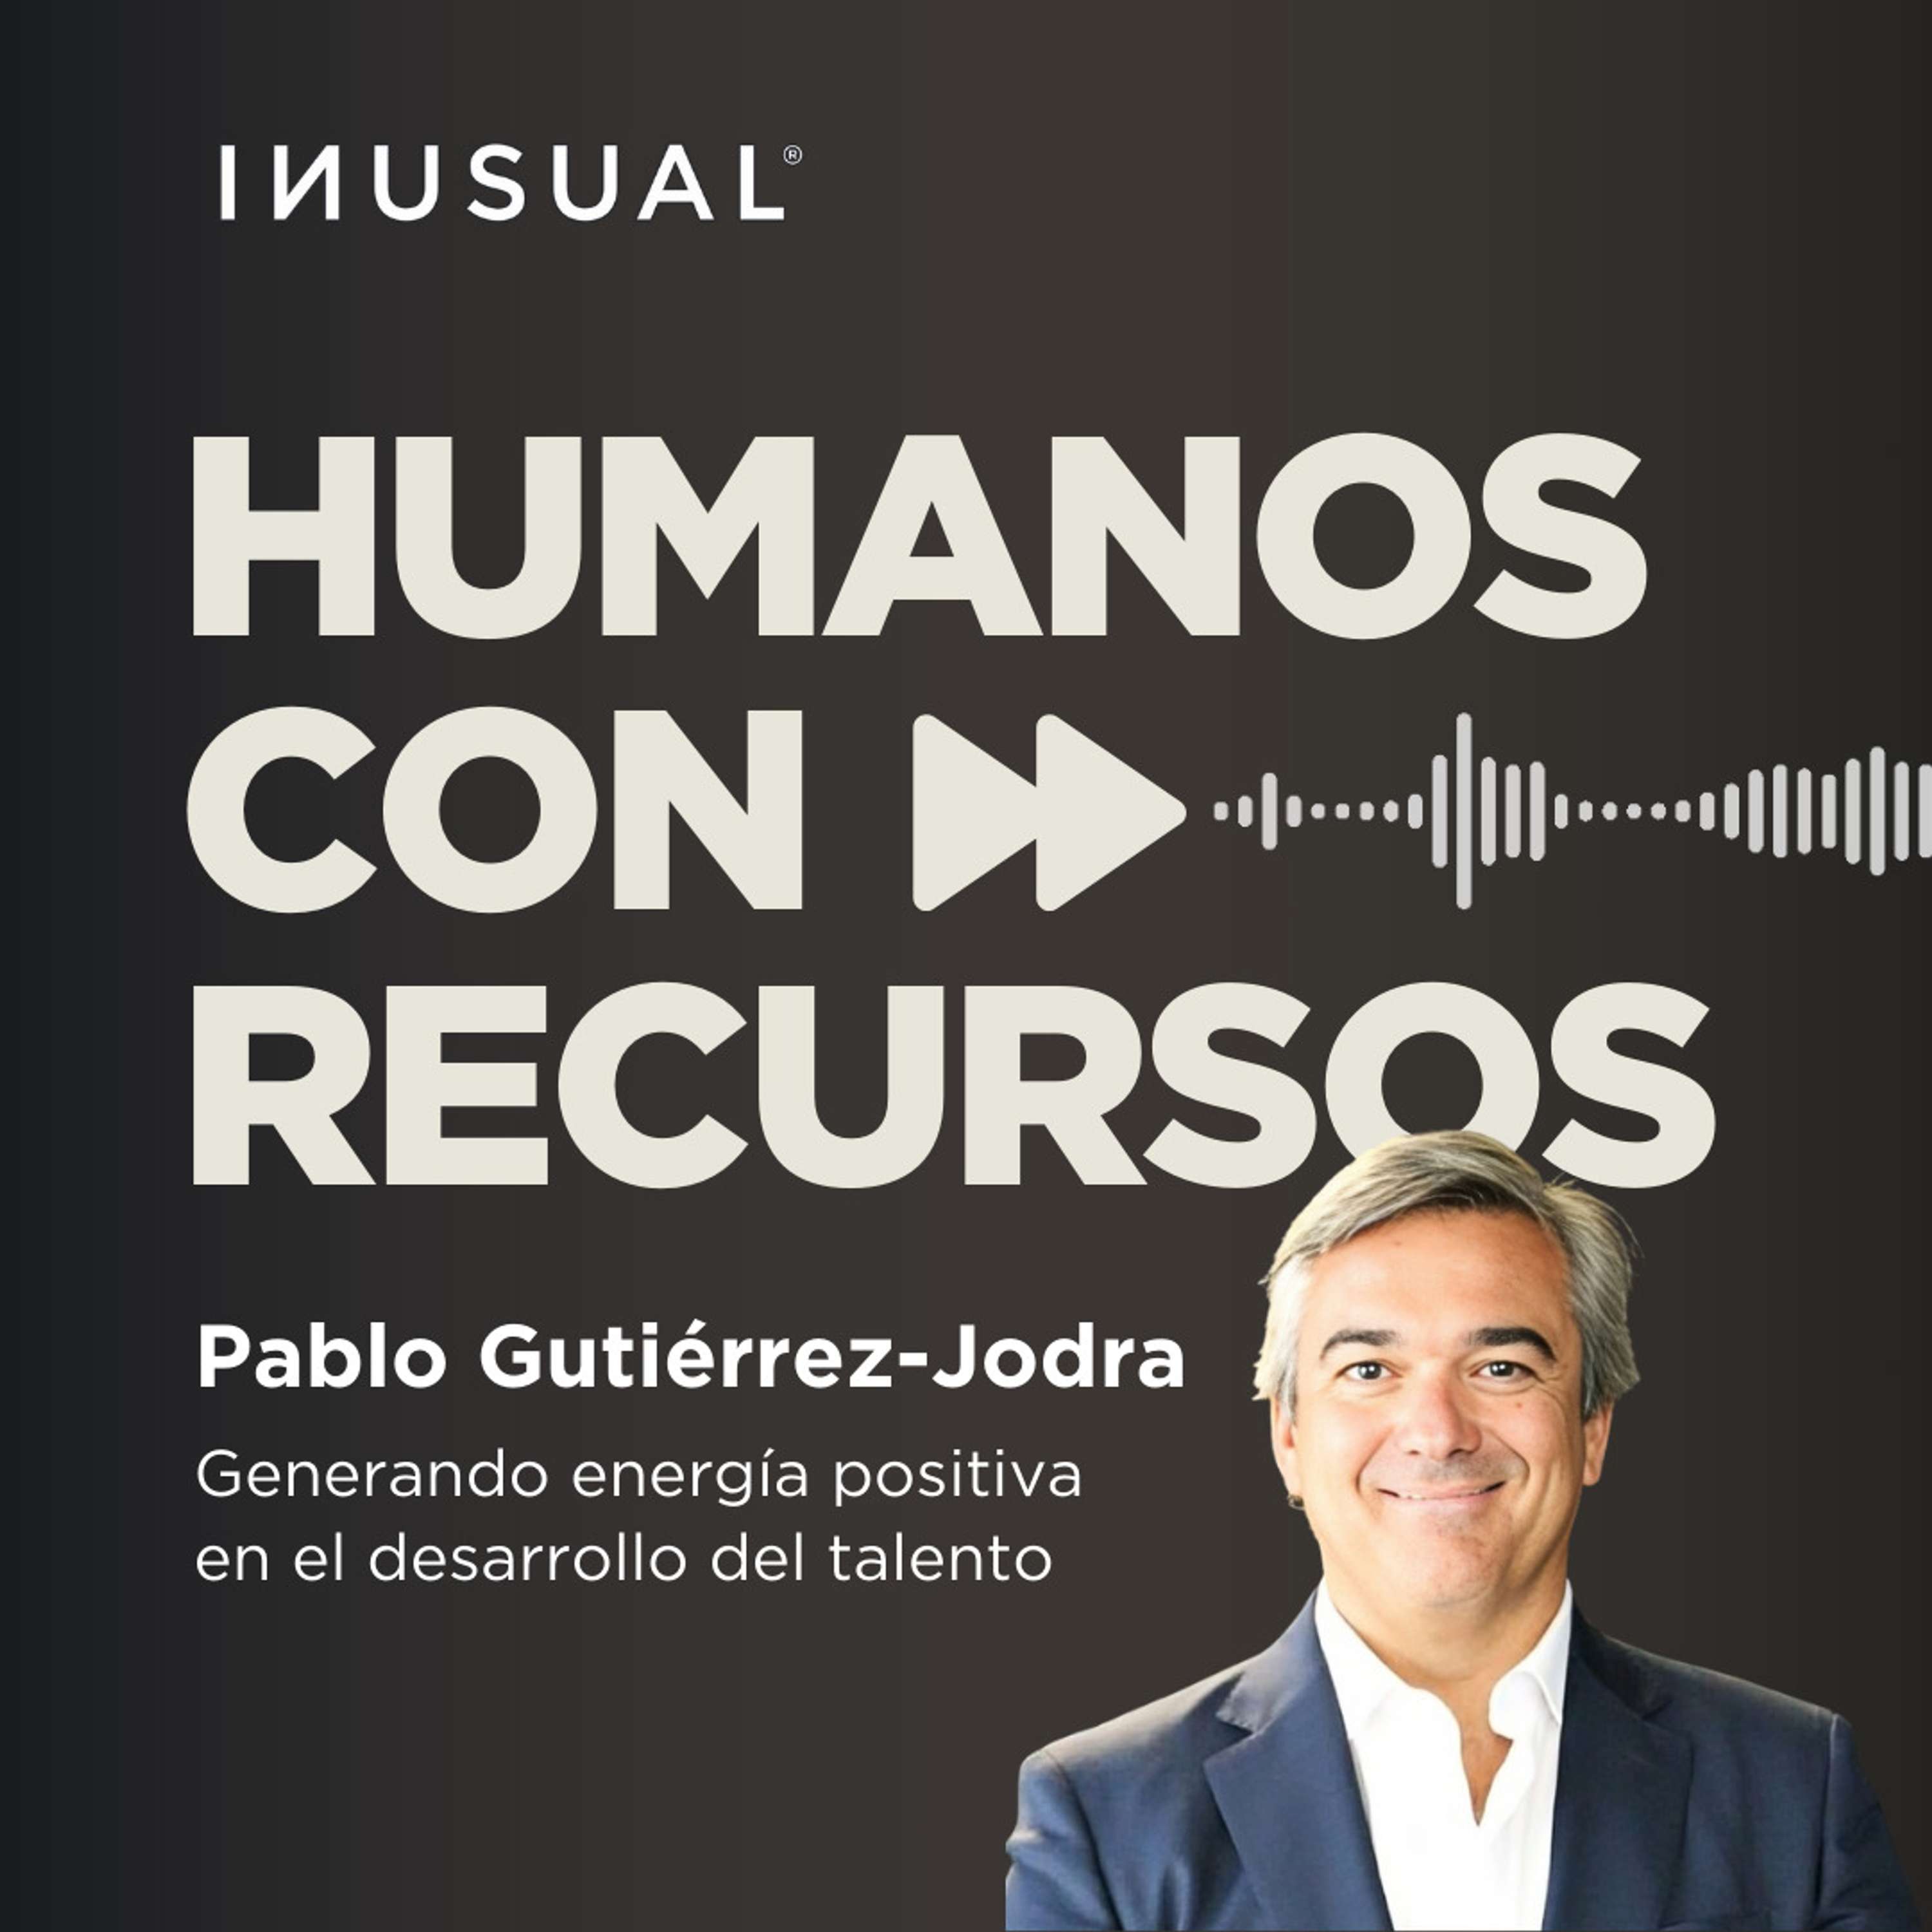 Generando energía positiva en el desarrollo del talento, con Pablo Gutiérrez-Jodra